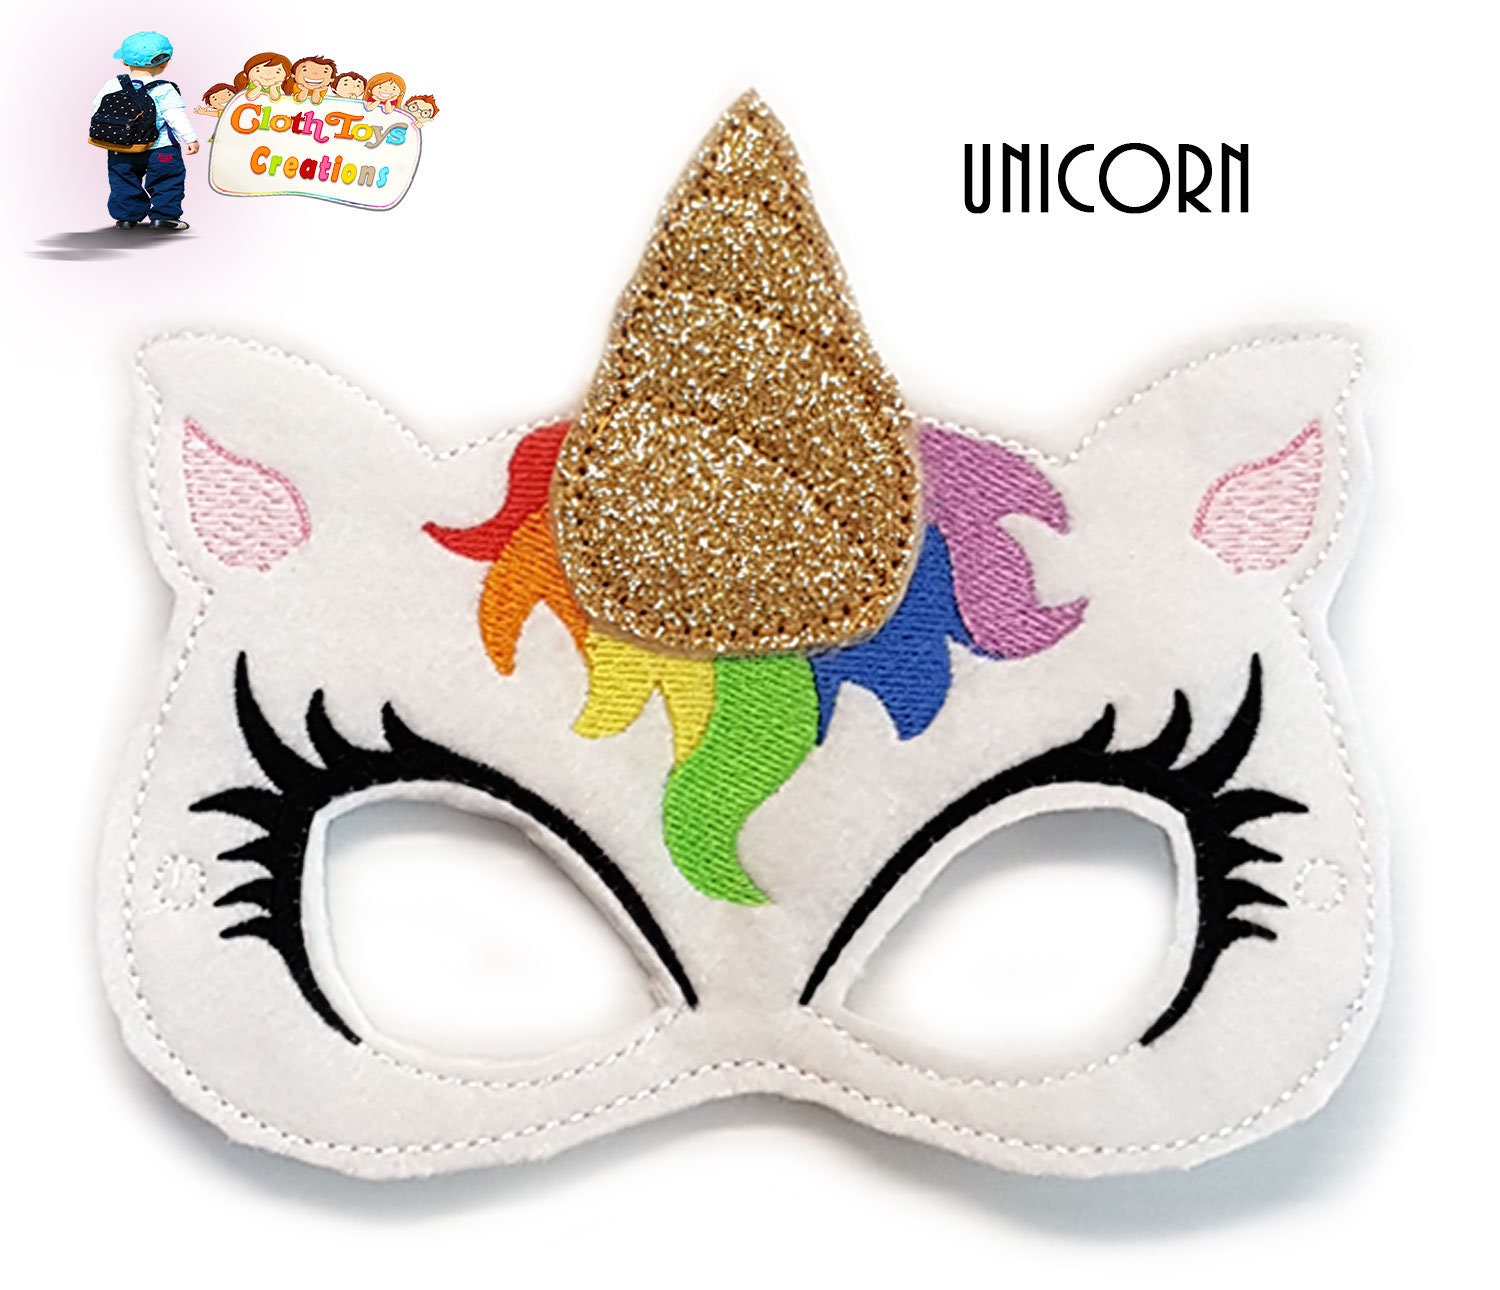 Máscara de unicornio para carnaval - El Blog de Soyde